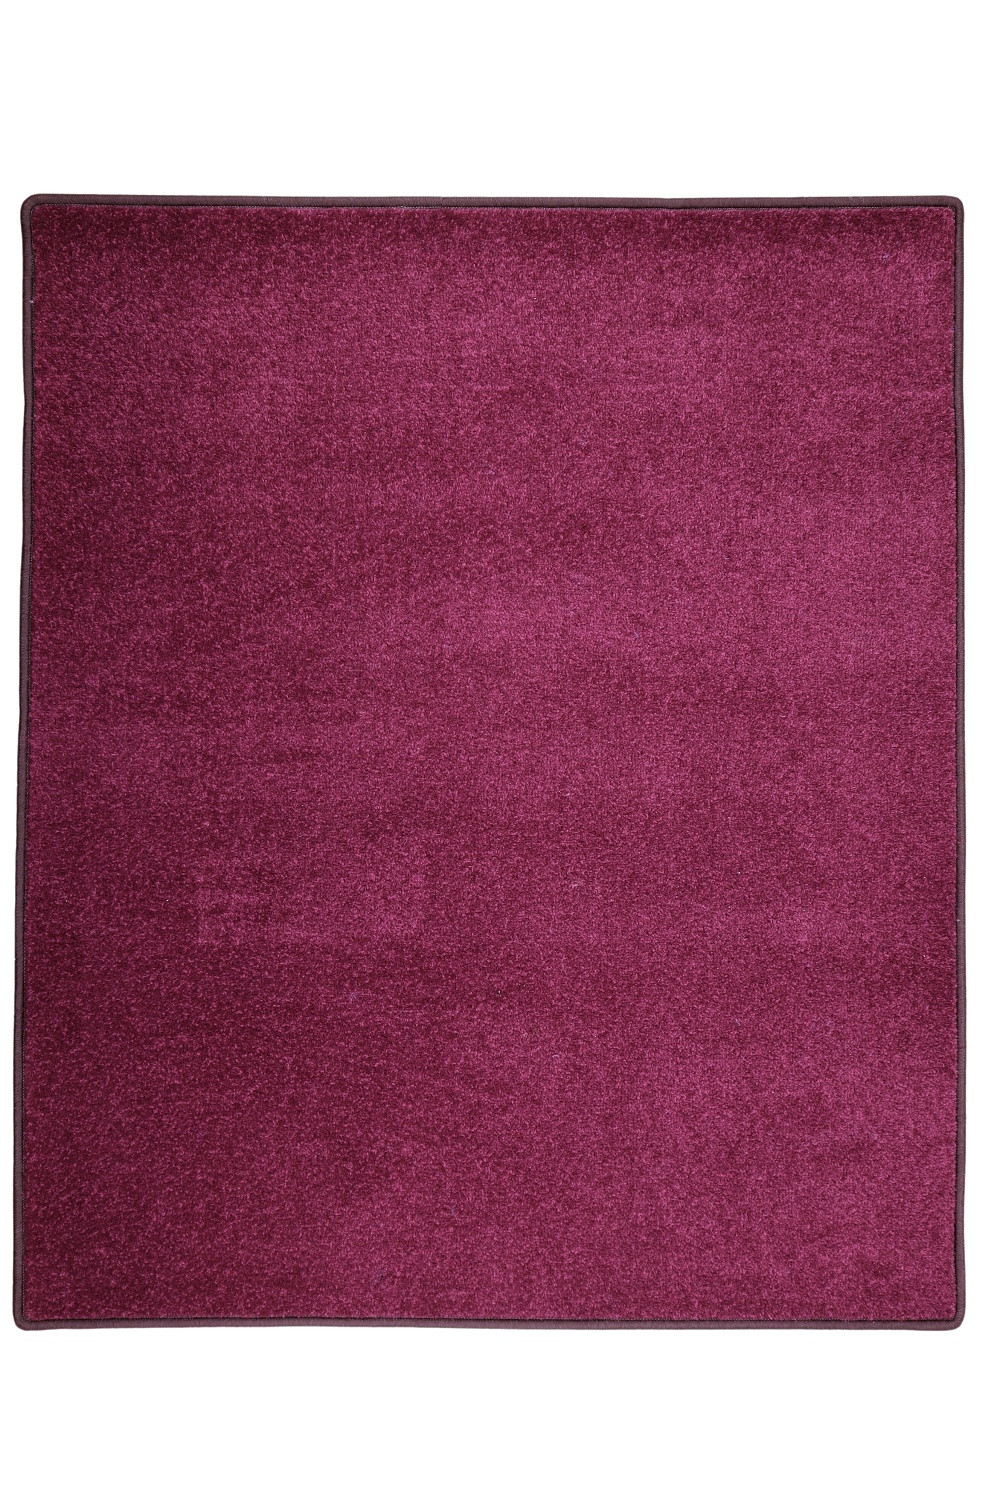 Kusový koberec Eton fialový 48 - 80x150 cm Vopi koberce 